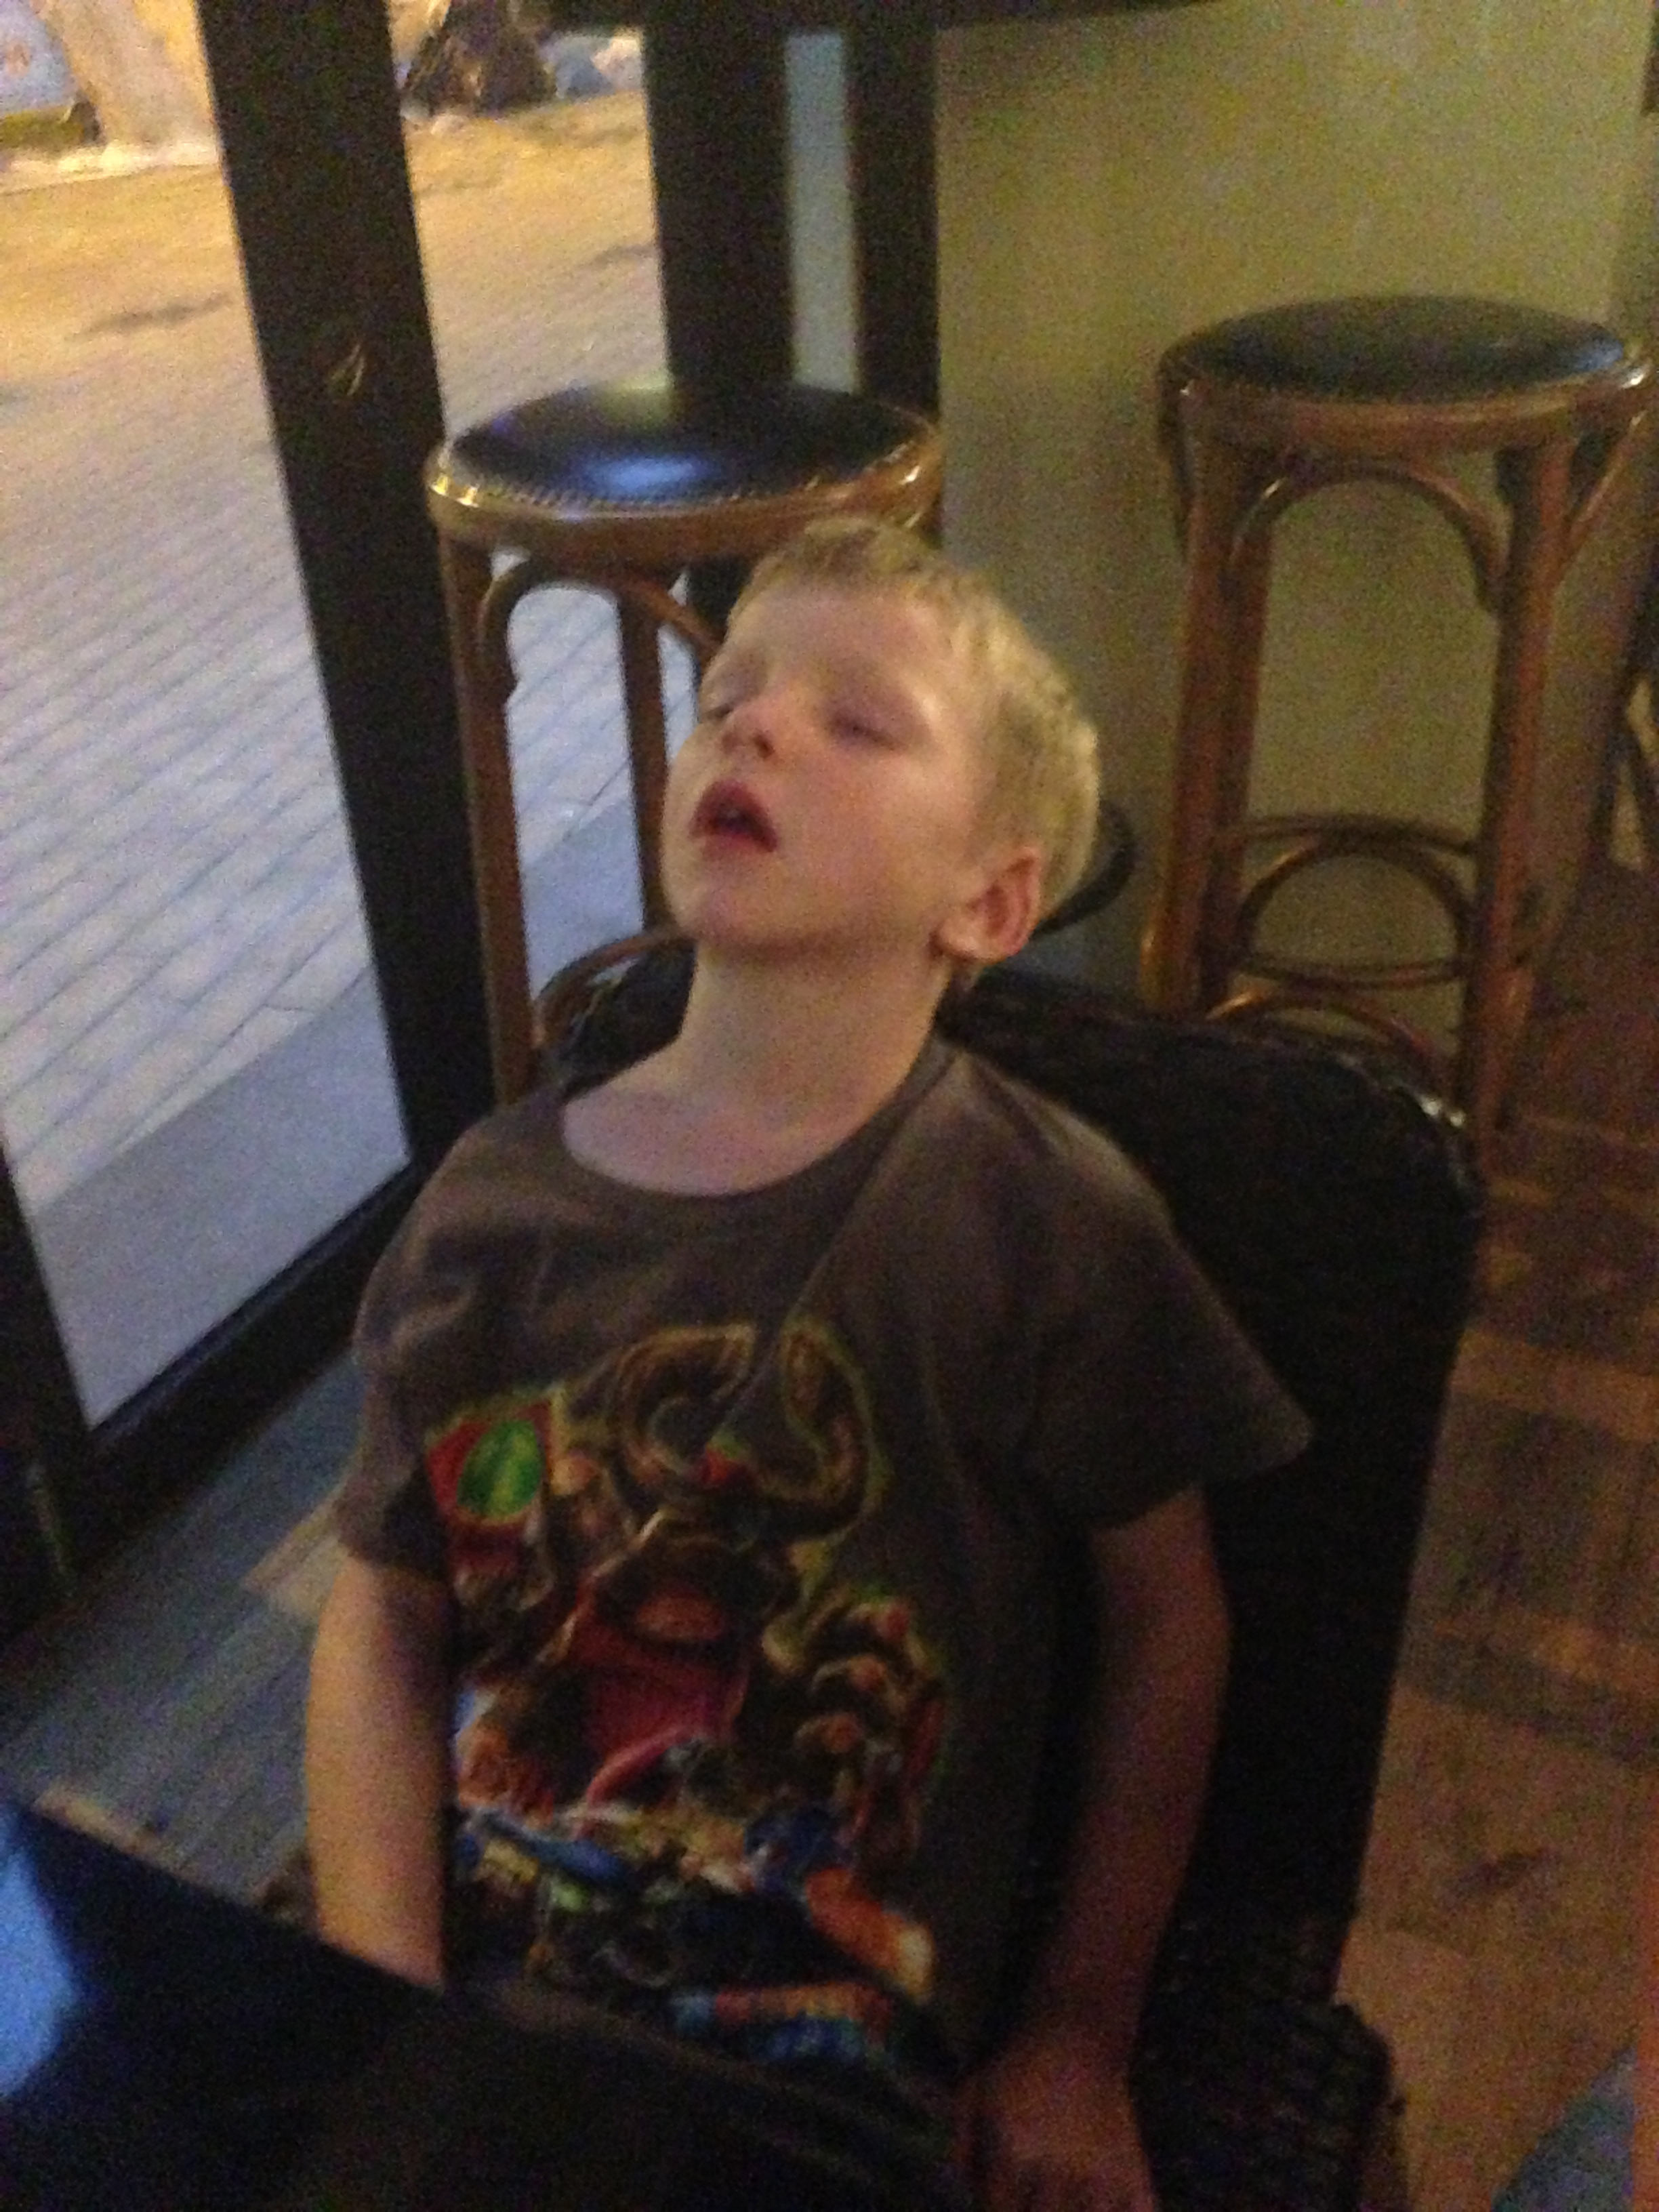 Asleep at the pub Honk Kong nights.